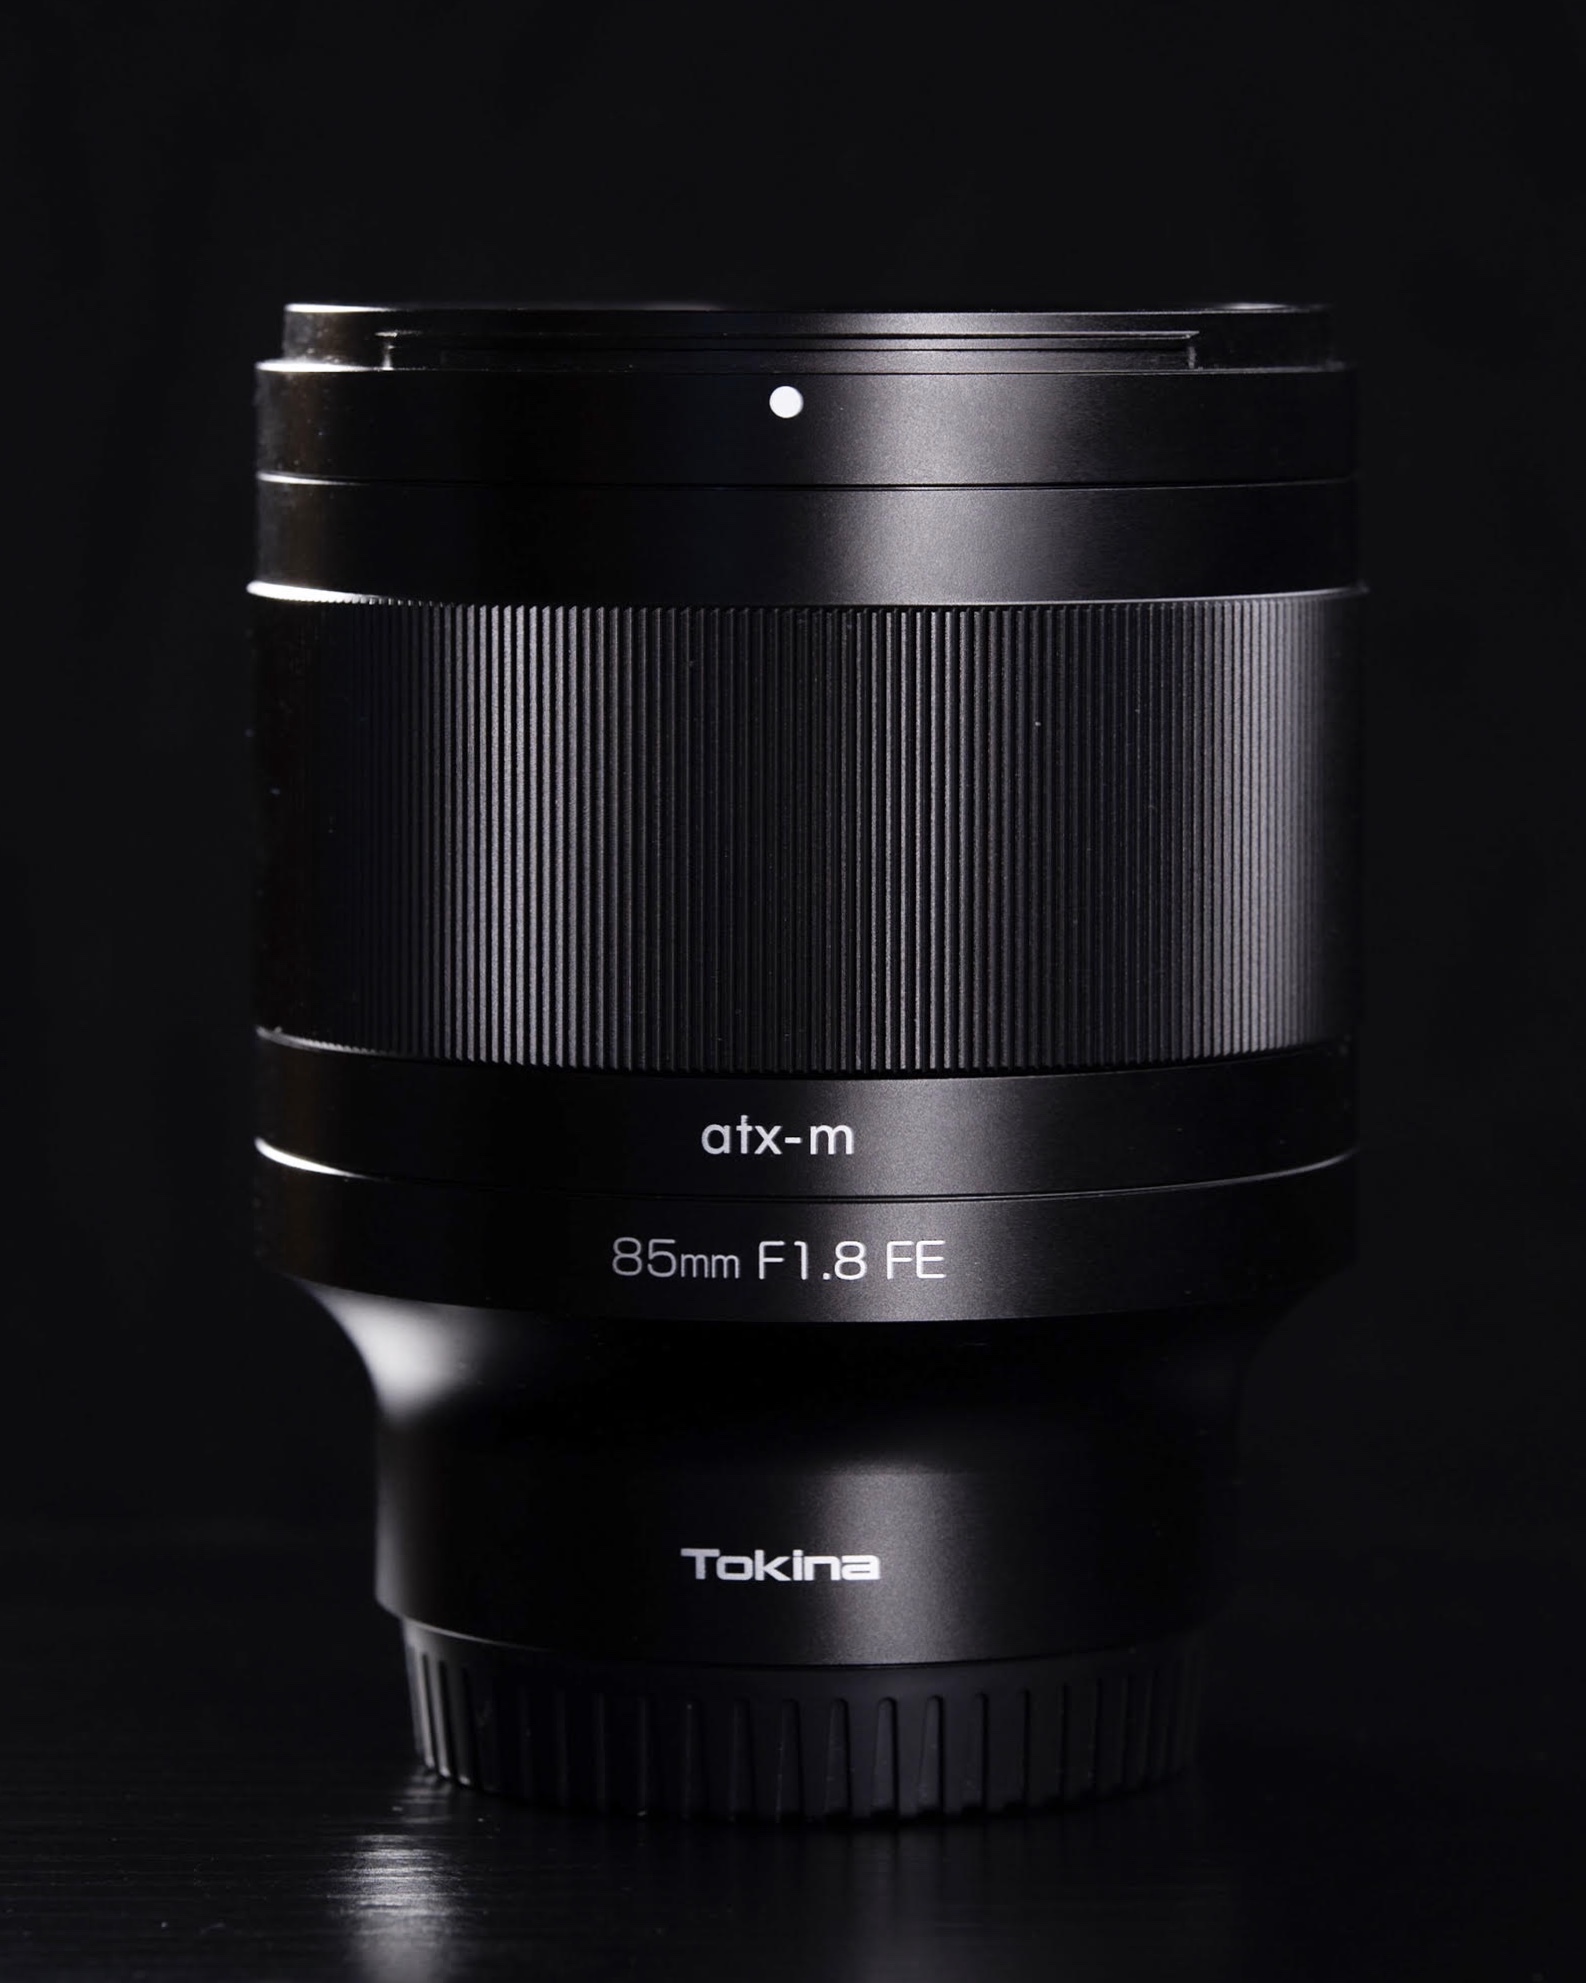 Tokina ra mắt ống kính một tiêu cự 85mm F1.8 FE dành cho máy ảnh Sony full-frame